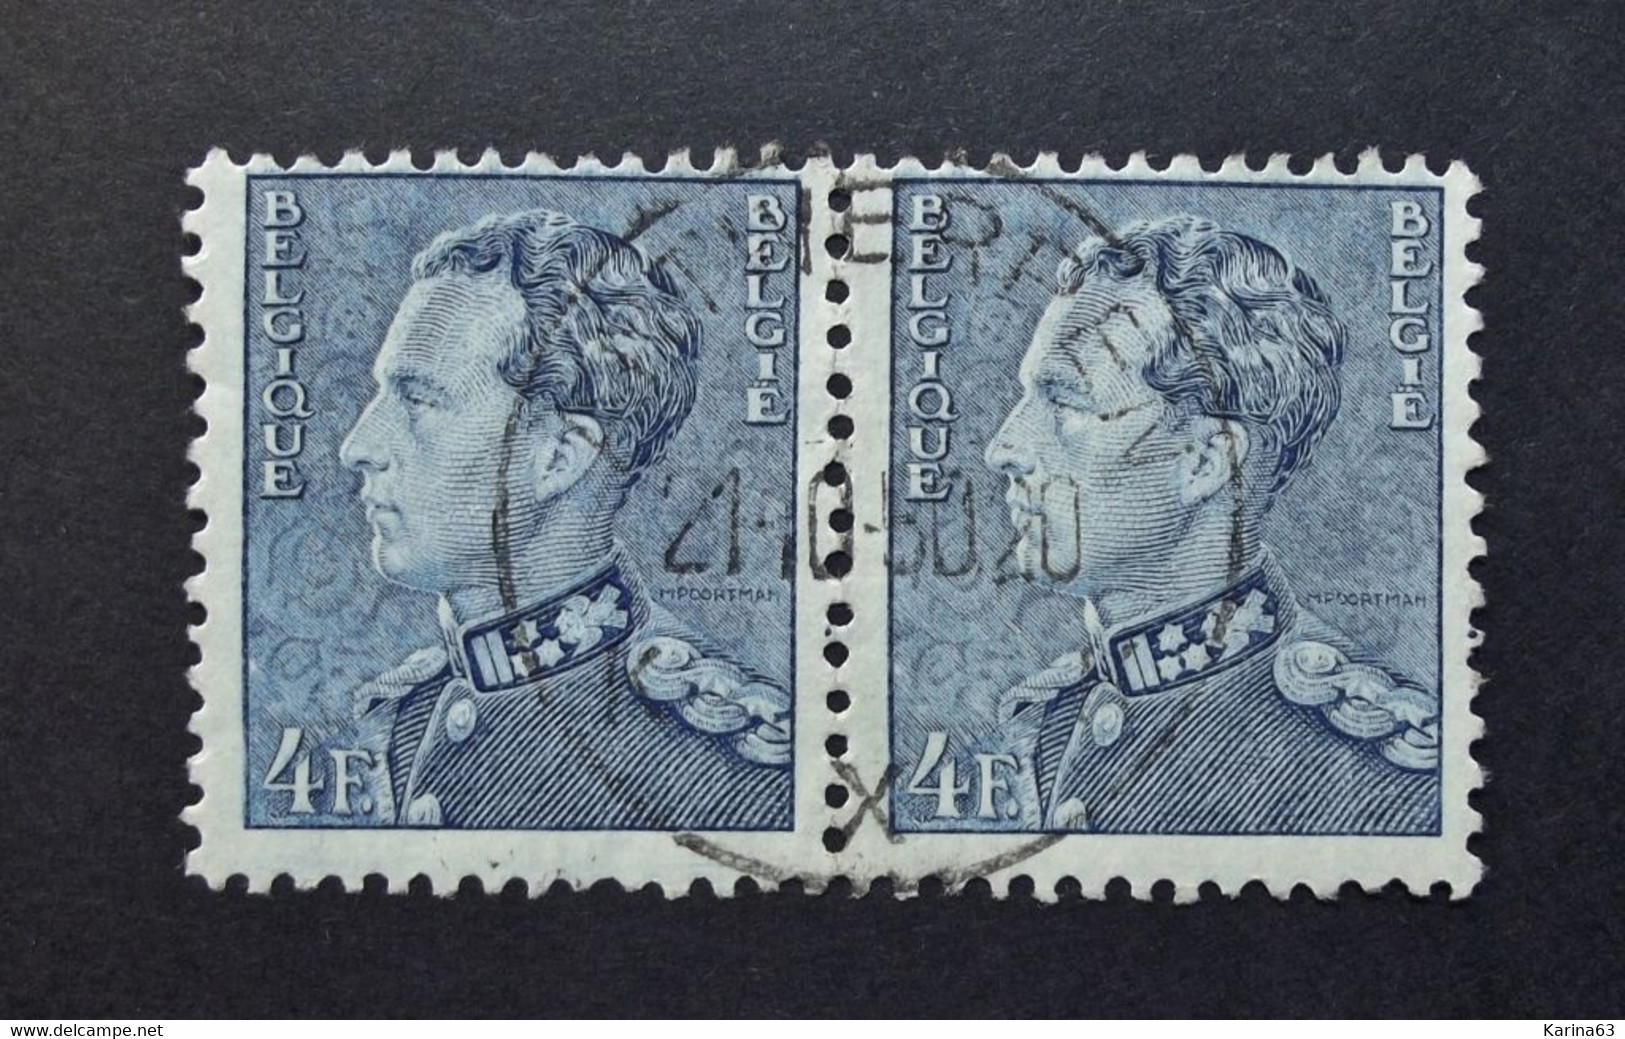 Belgie Belgique - 1950 - OPB/COB  N° 833  (2 Value) - Koning Leopold III  Poortman Obl. -  Antwerpen X . - Usados